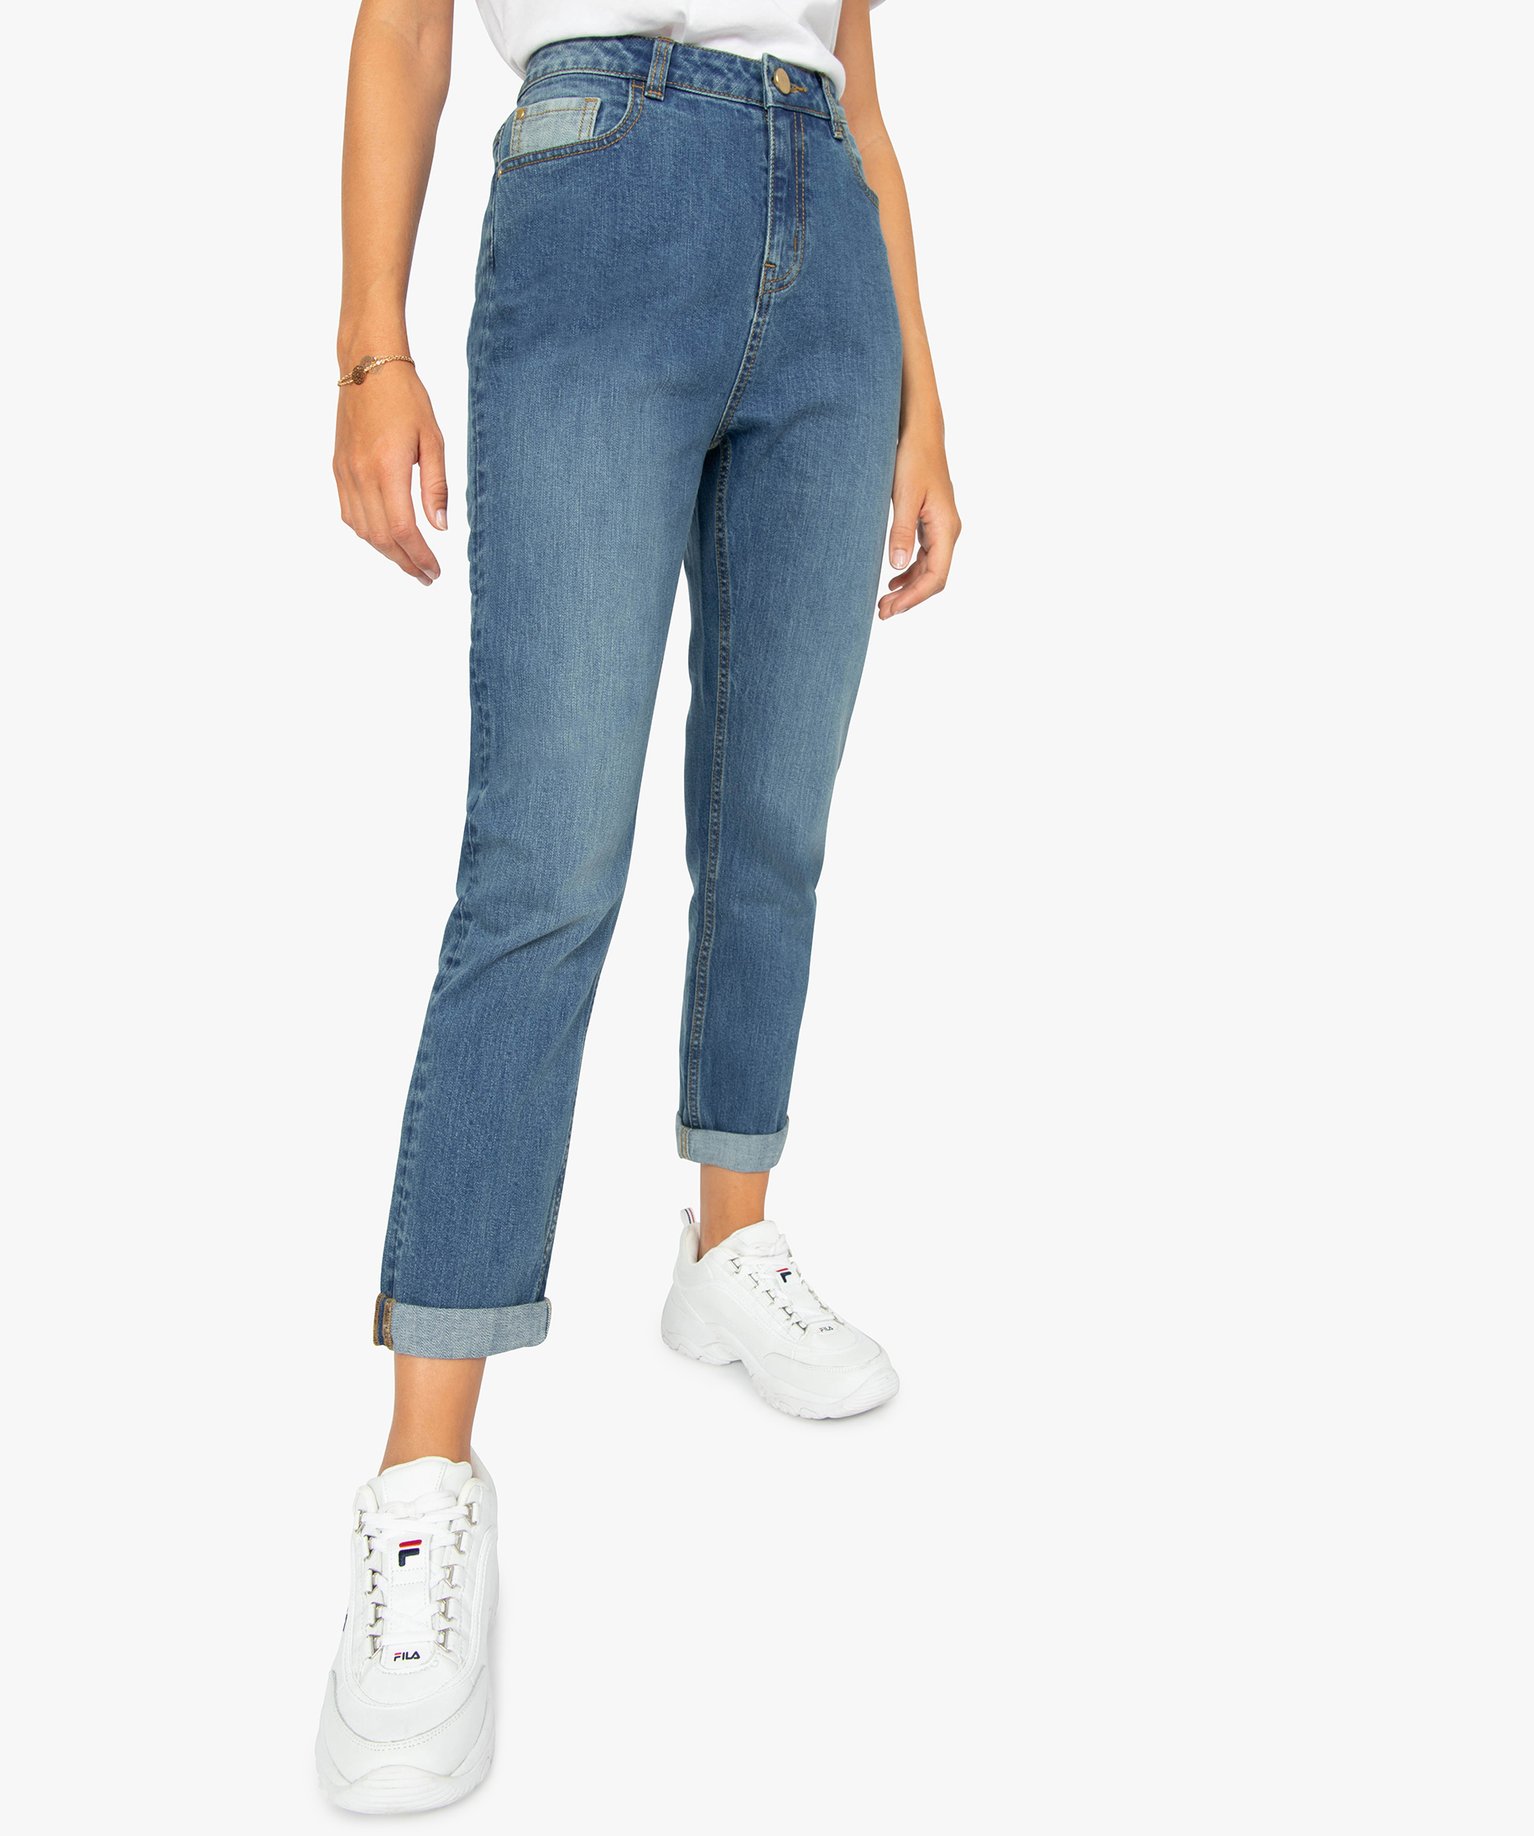 Femme Vêtements Jeans Jeans coupe droite Pantalon en jean Jean Vetements en coloris Bleu 